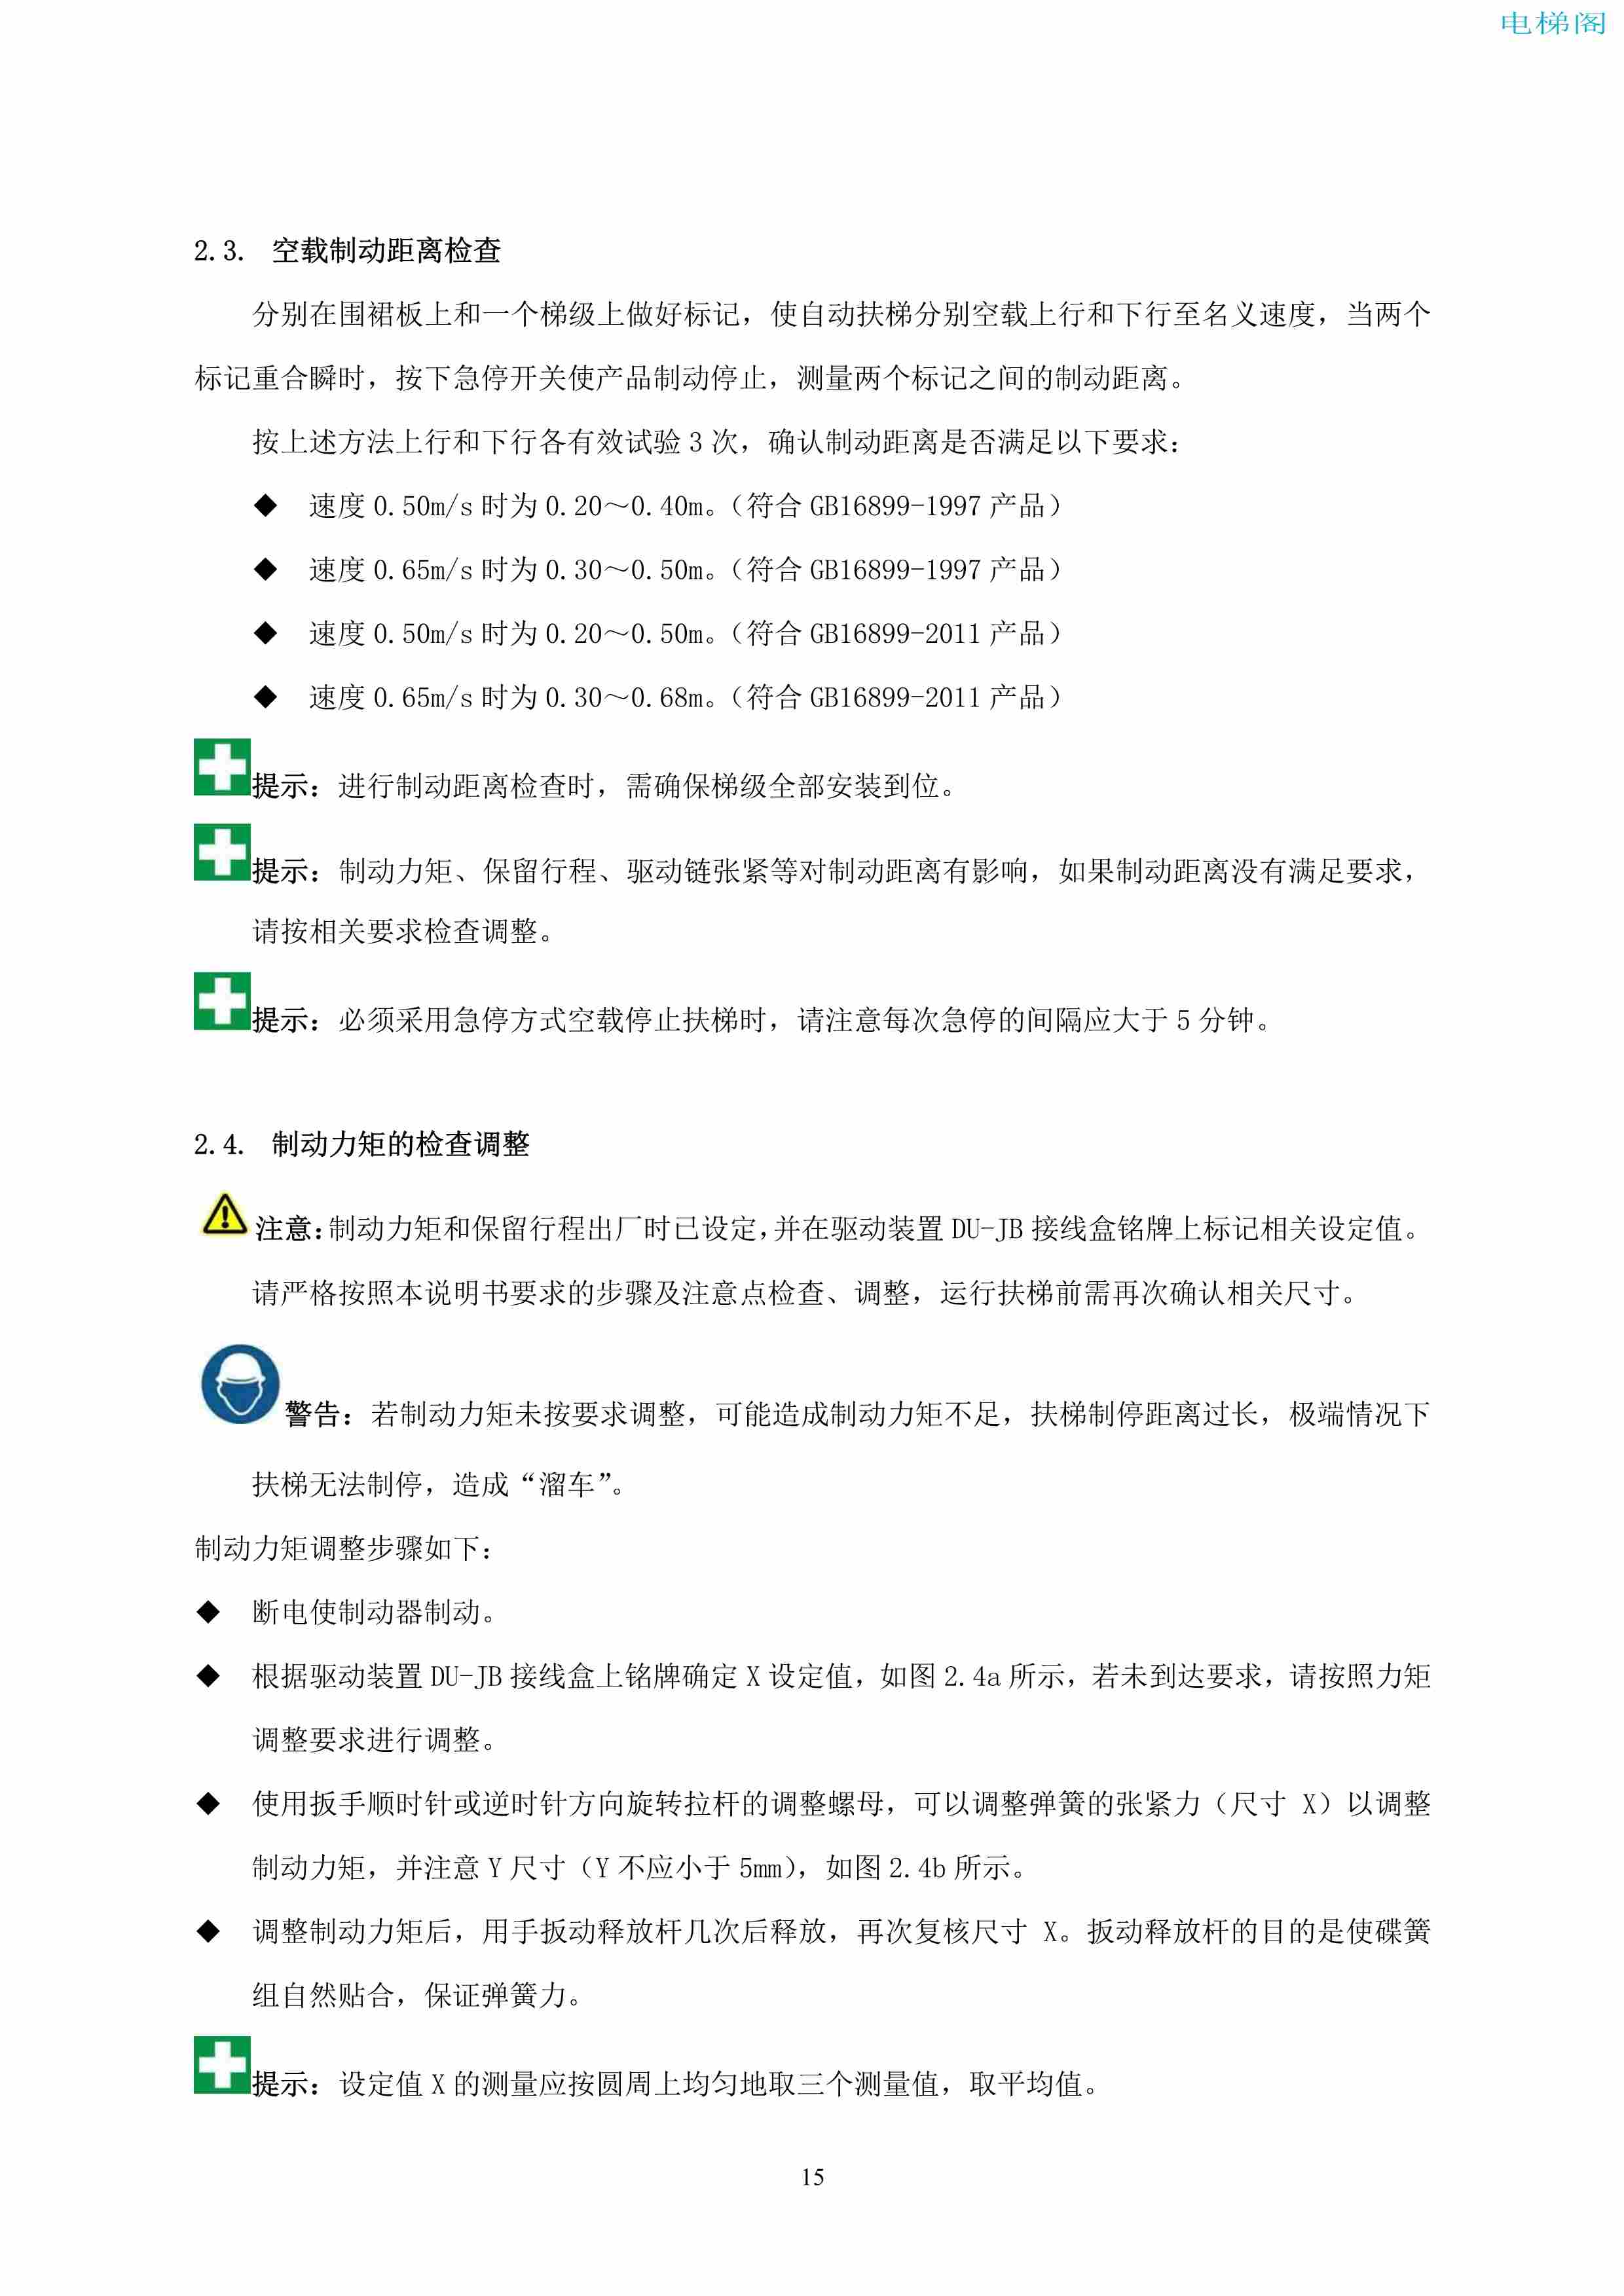 上海三菱电梯有限公司自动扶梯制动器维护作业要领汇编_16.jpg